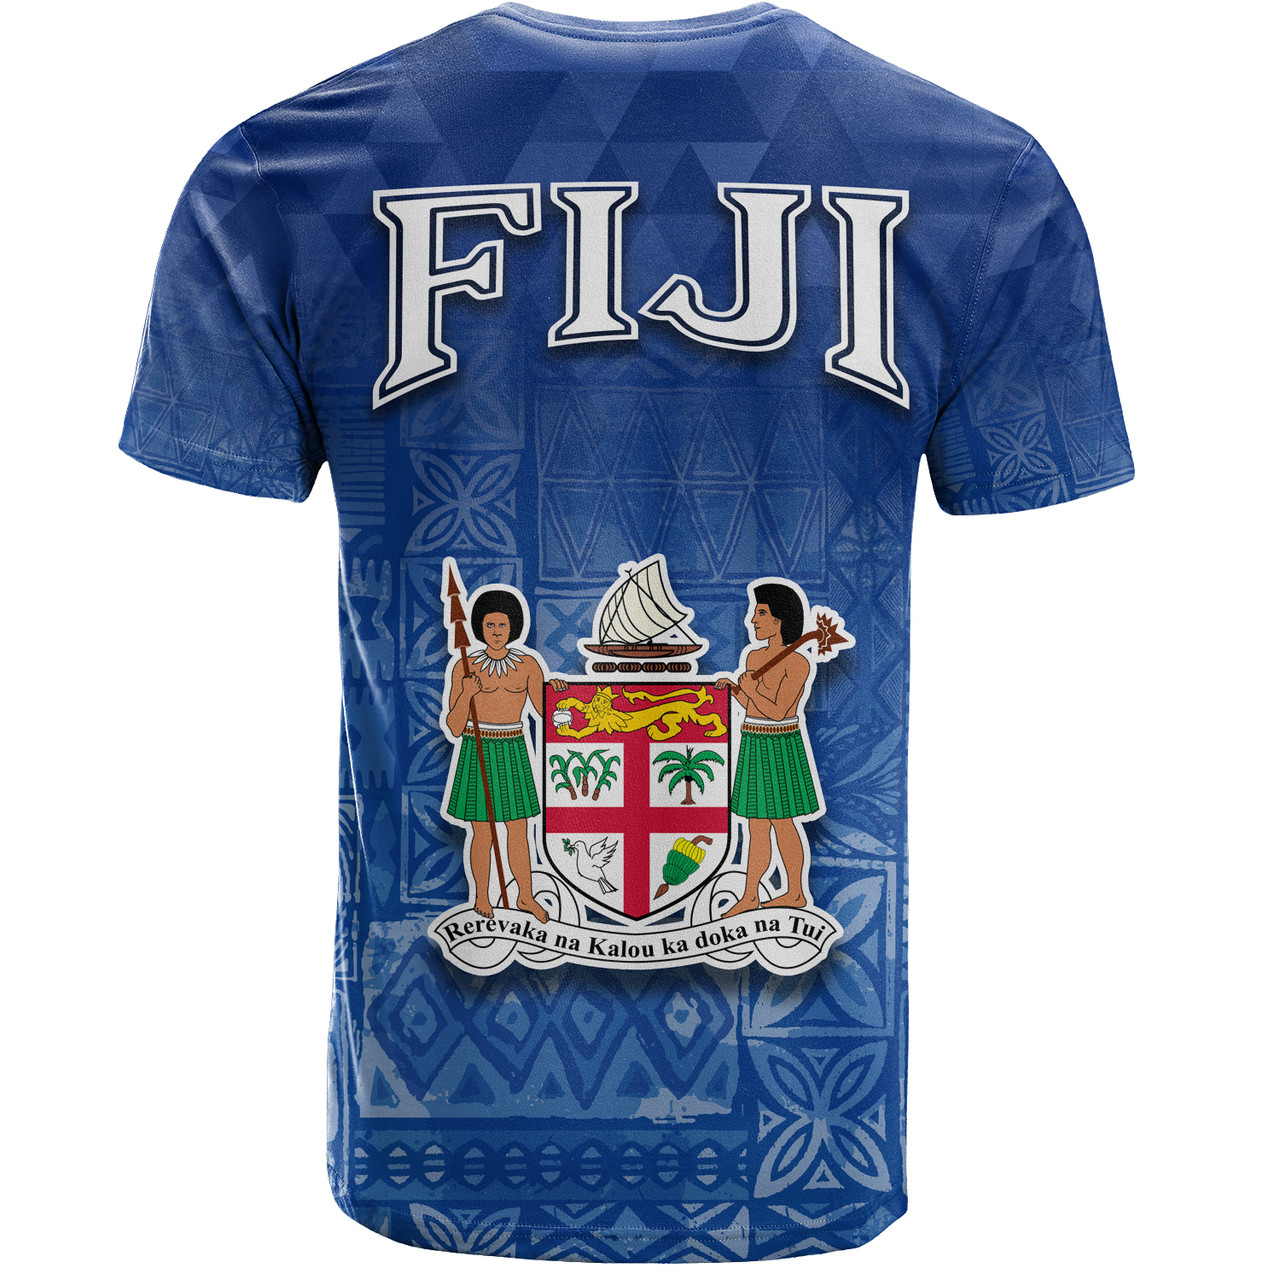 Fiji T-Shirt Loloma Fijian Love Polynesian